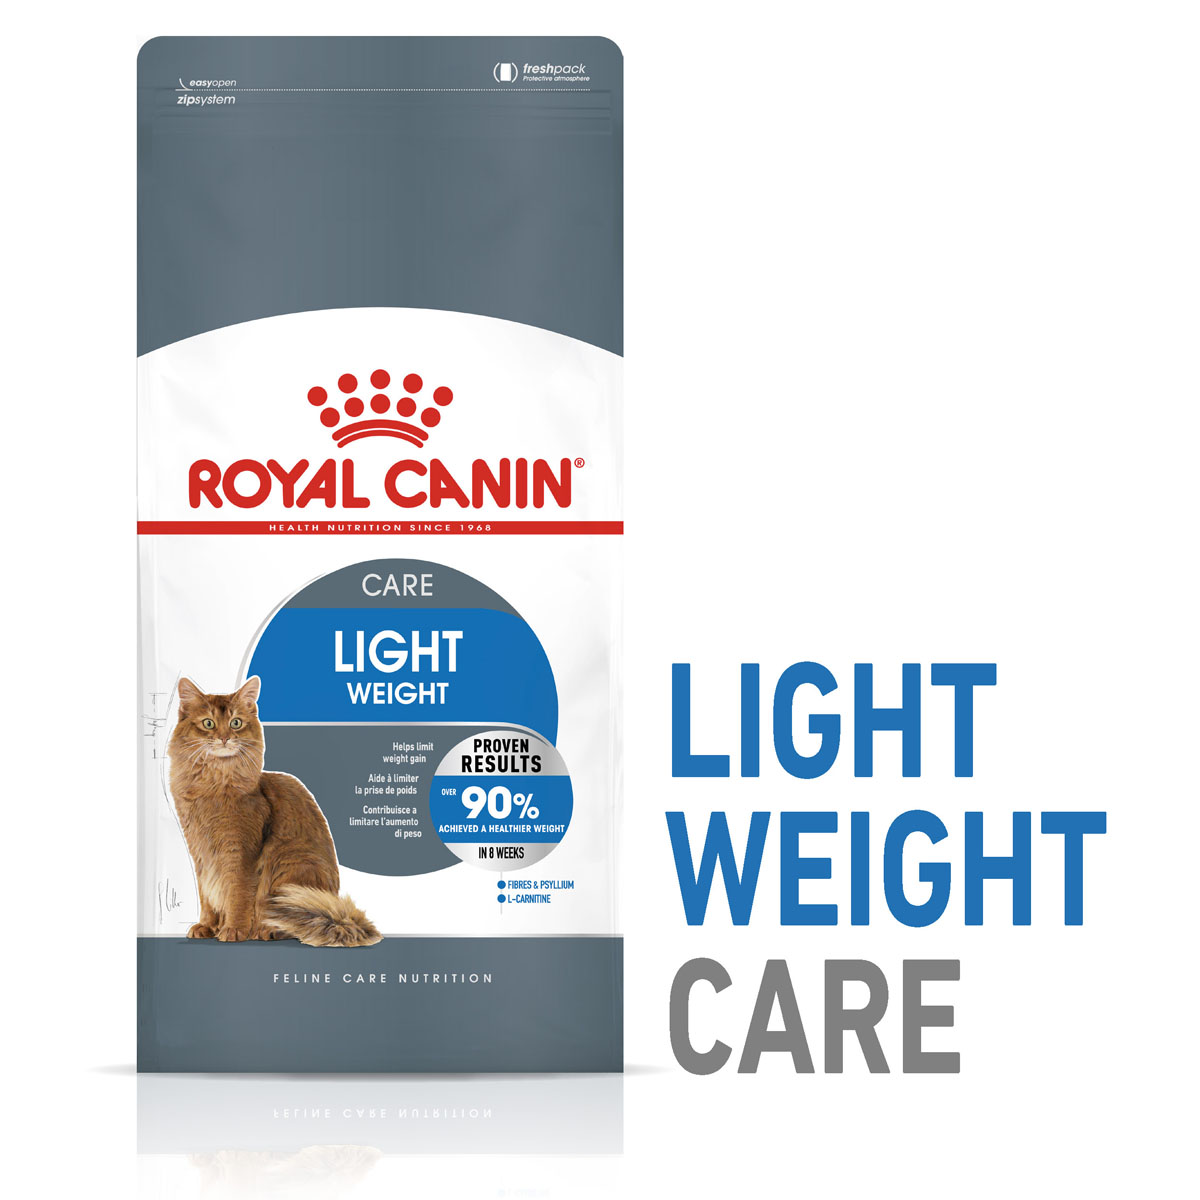 ROYAL CANIN LIGHT WEIGHT CARE Trockenfutter für zu Übergewicht neigenden Katzen 8kg